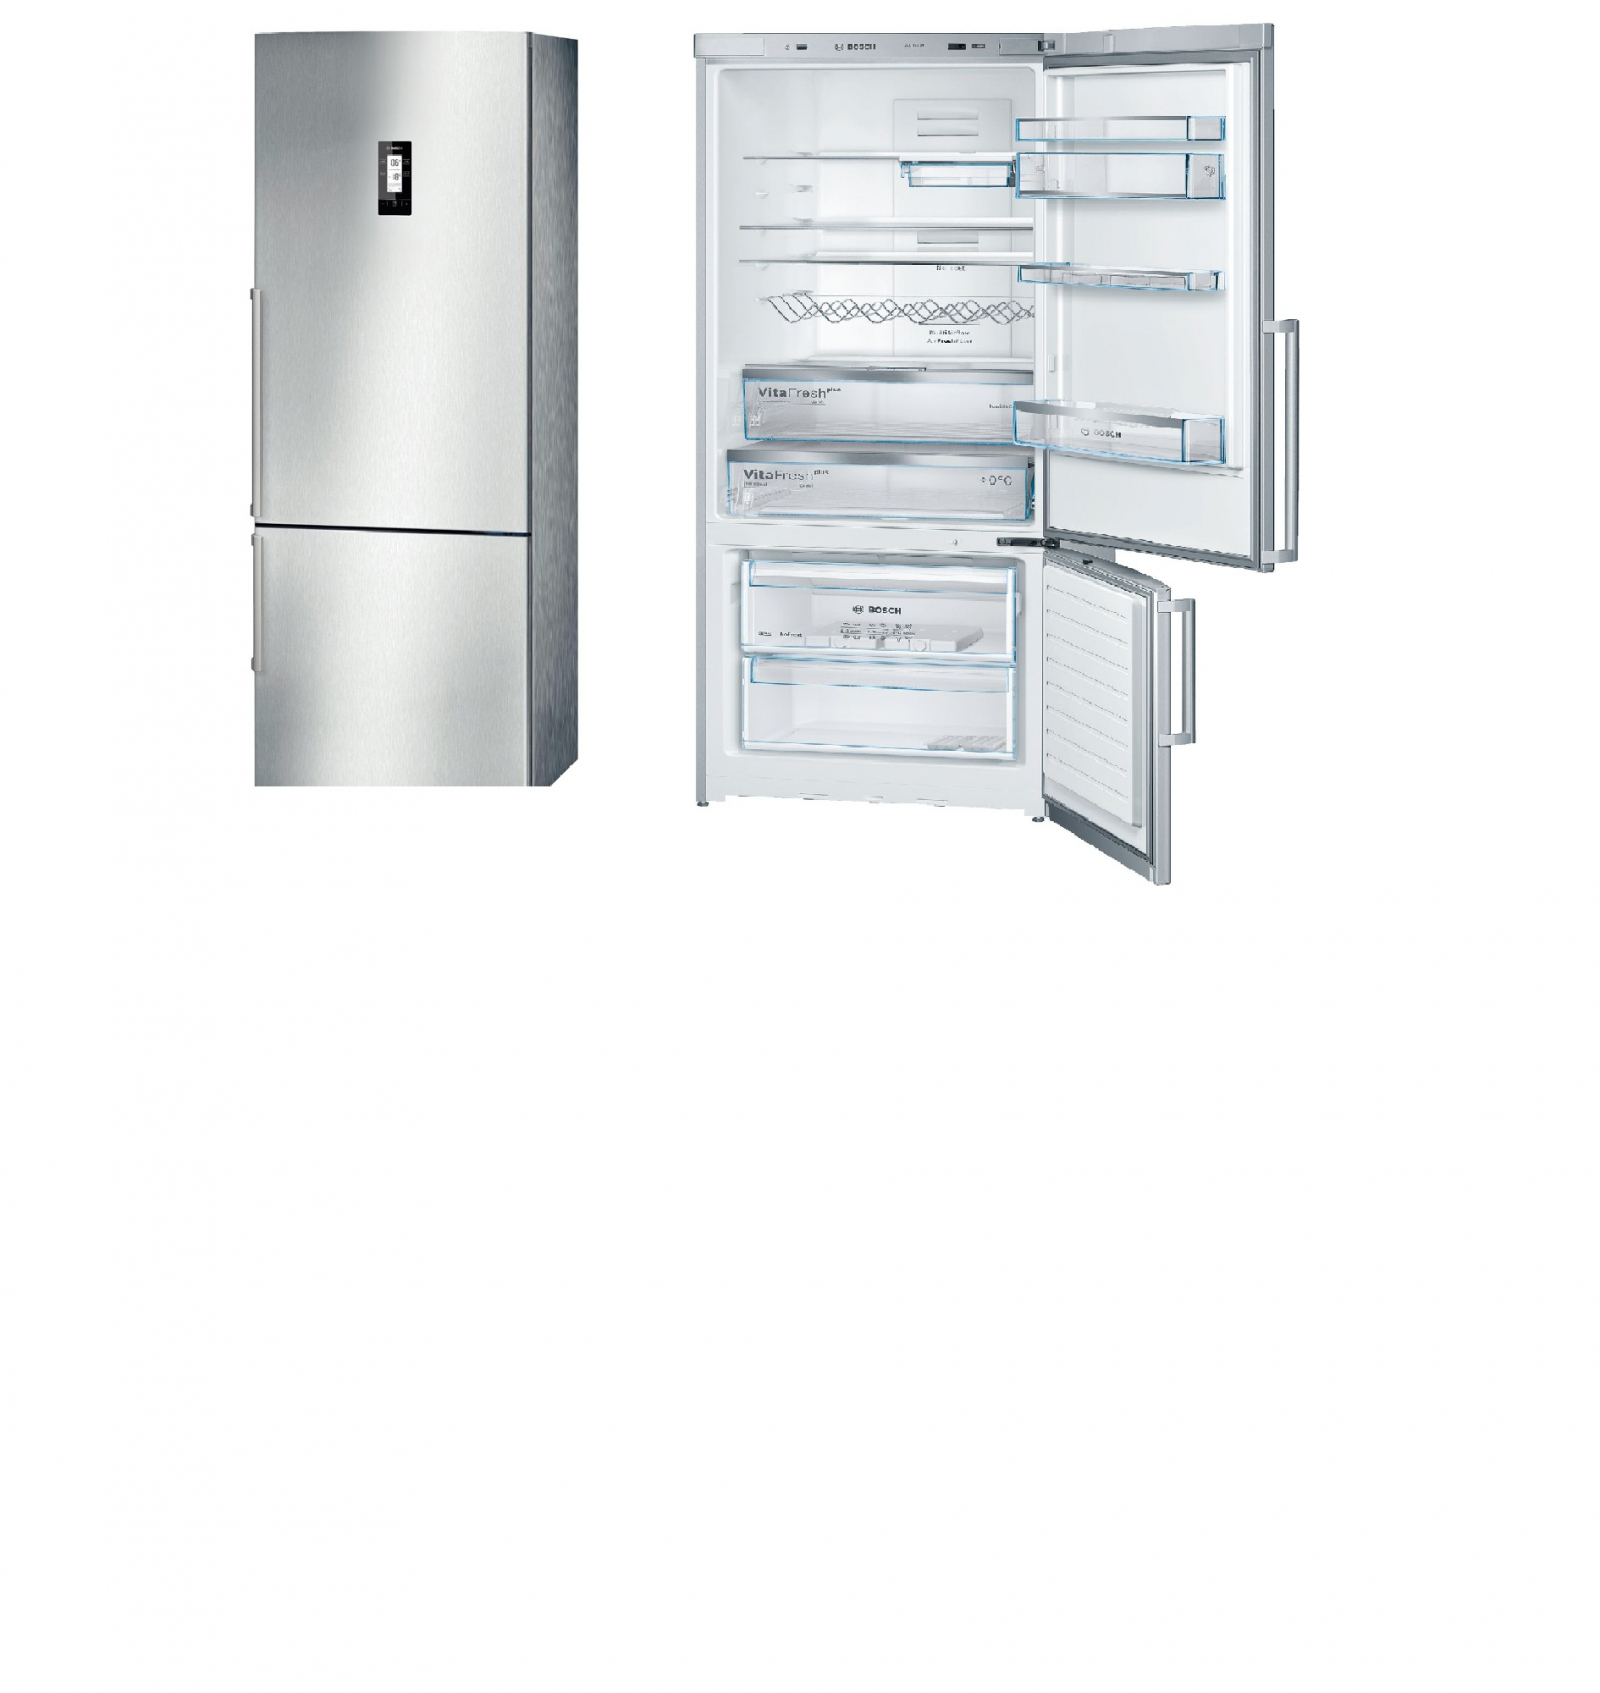 холодильник bosch kgn57pi20u, купить в Красноярске холодильник bosch kgn57pi20u,  купить в Красноярске дешево холодильник bosch kgn57pi20u, купить в Красноярске минимальной цене холодильник bosch kgn57pi20u